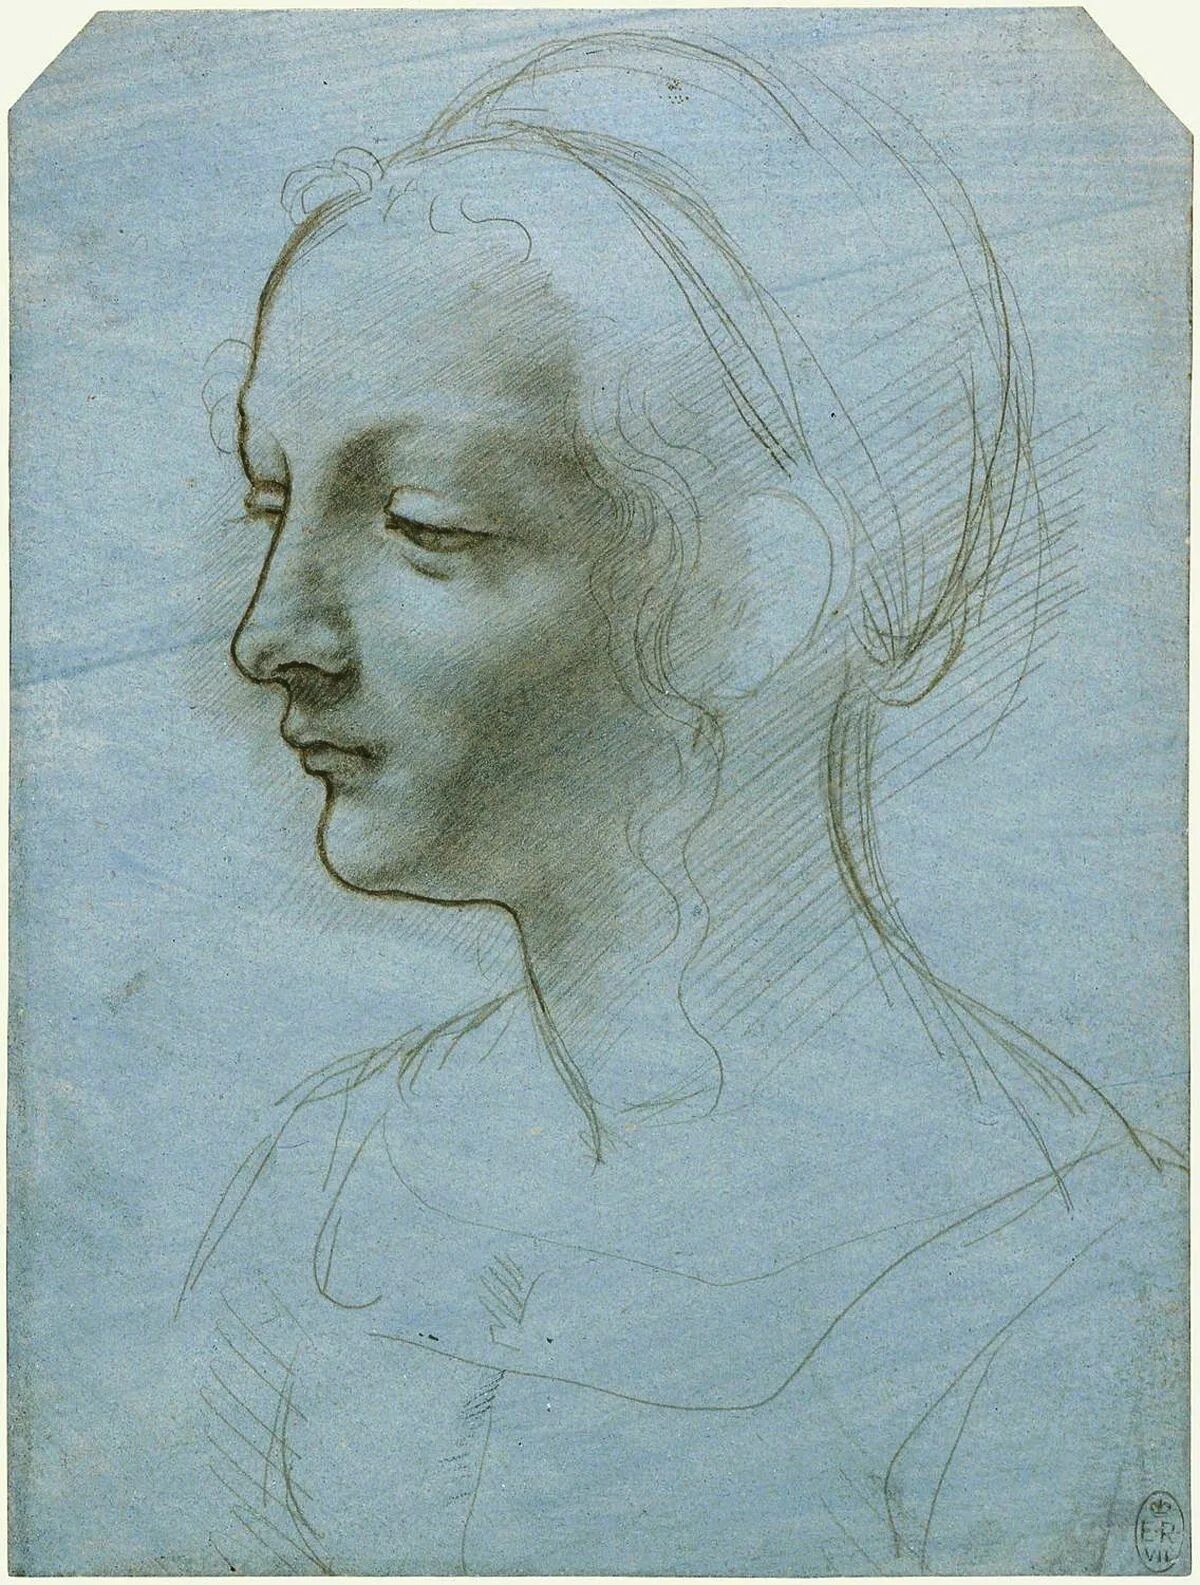 Рисунки эпохи возрождения. Автопортрет мастера Леонардо да Винчи. Леонардо да Винчи Наброски головы человека. Портрет в графике Леонардо Давинчи.